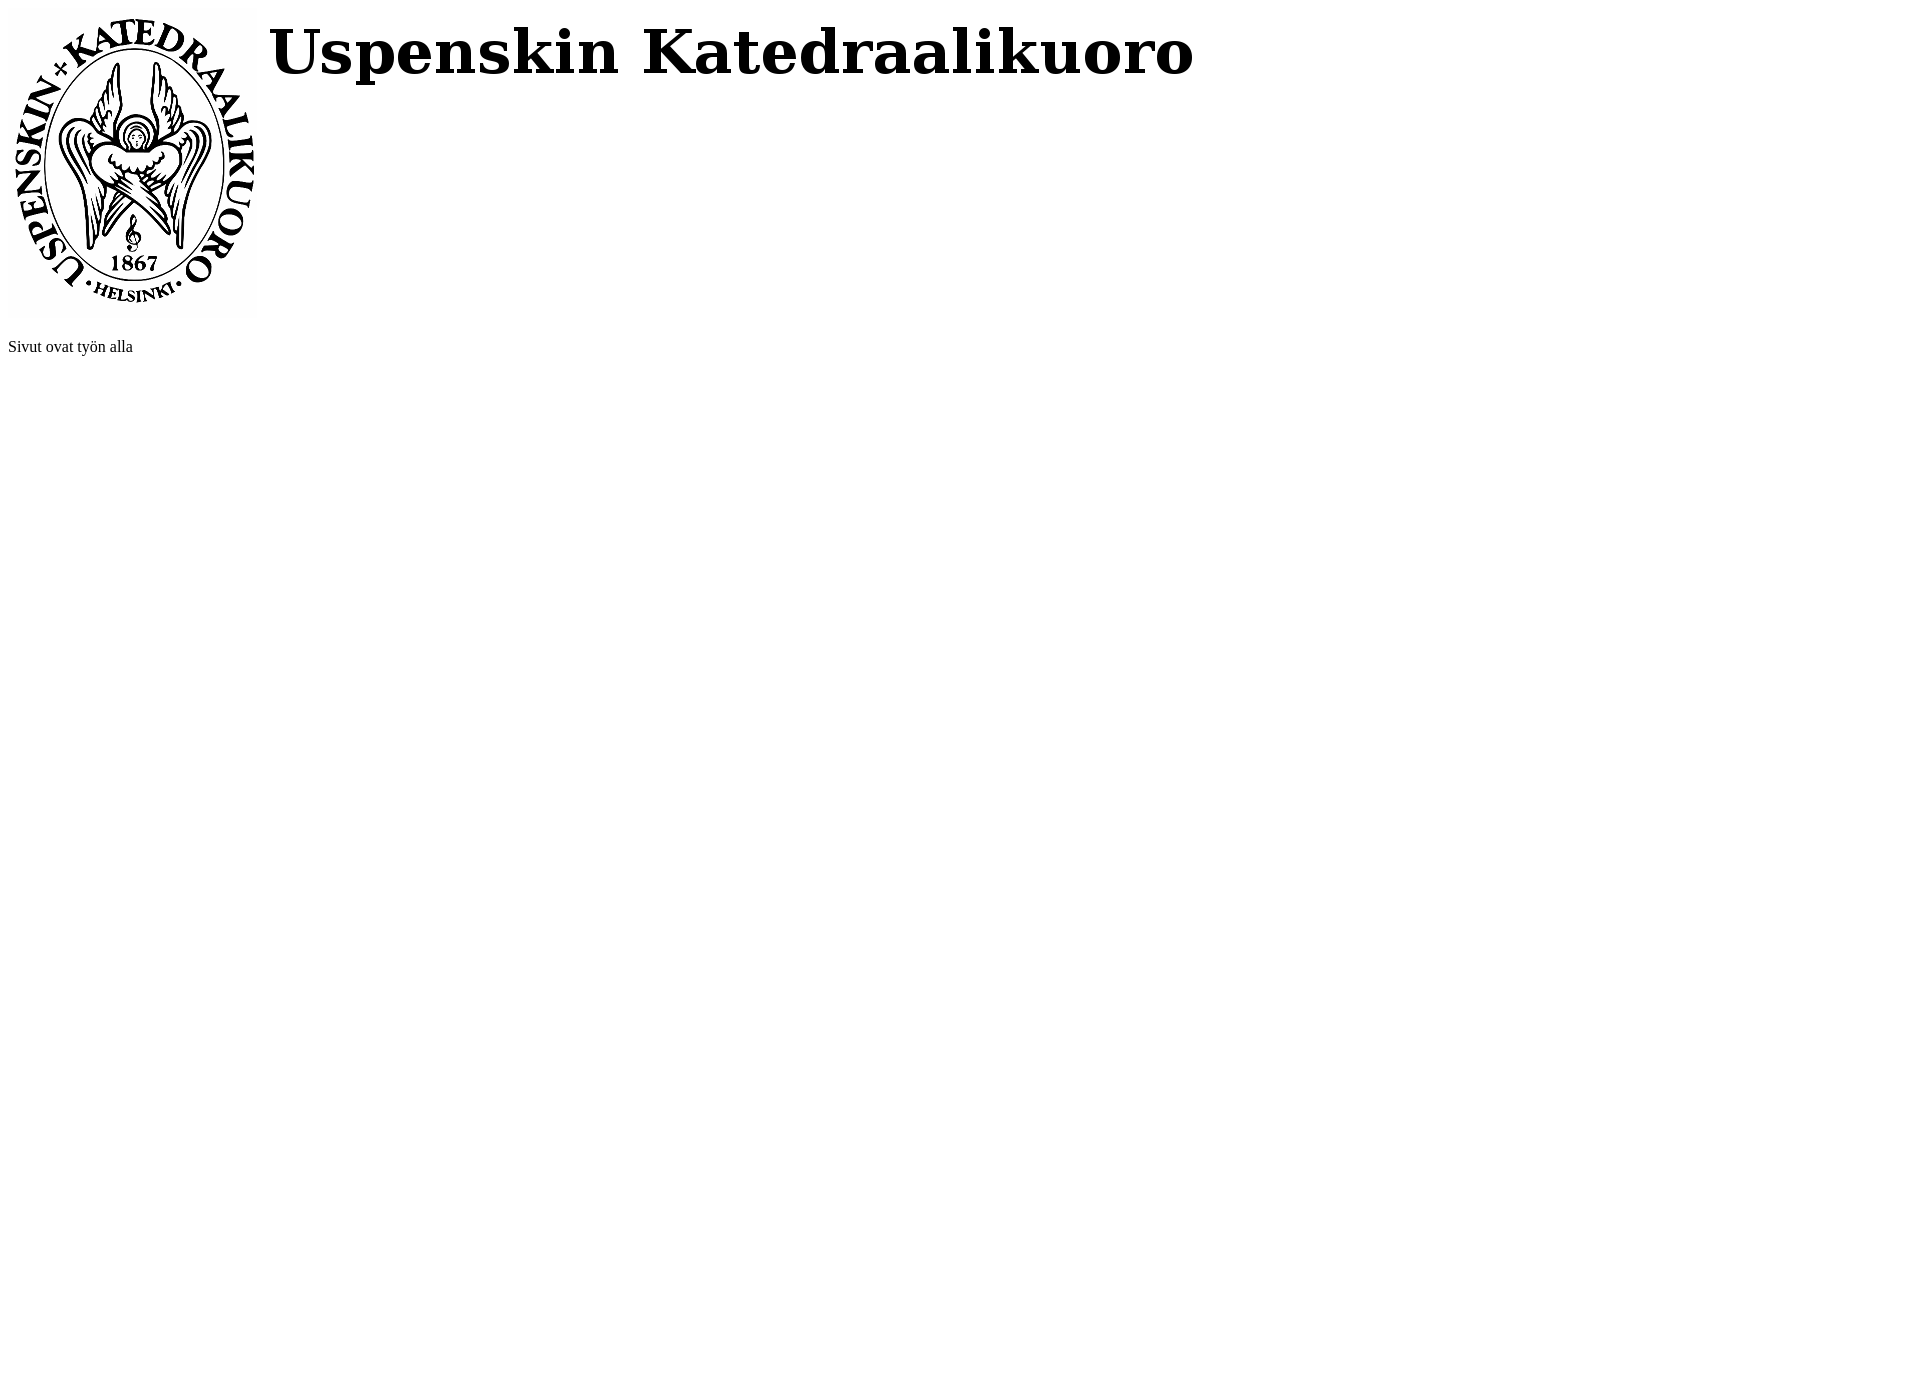 Näyttökuva uspenskinkatedraalikuoro.fi